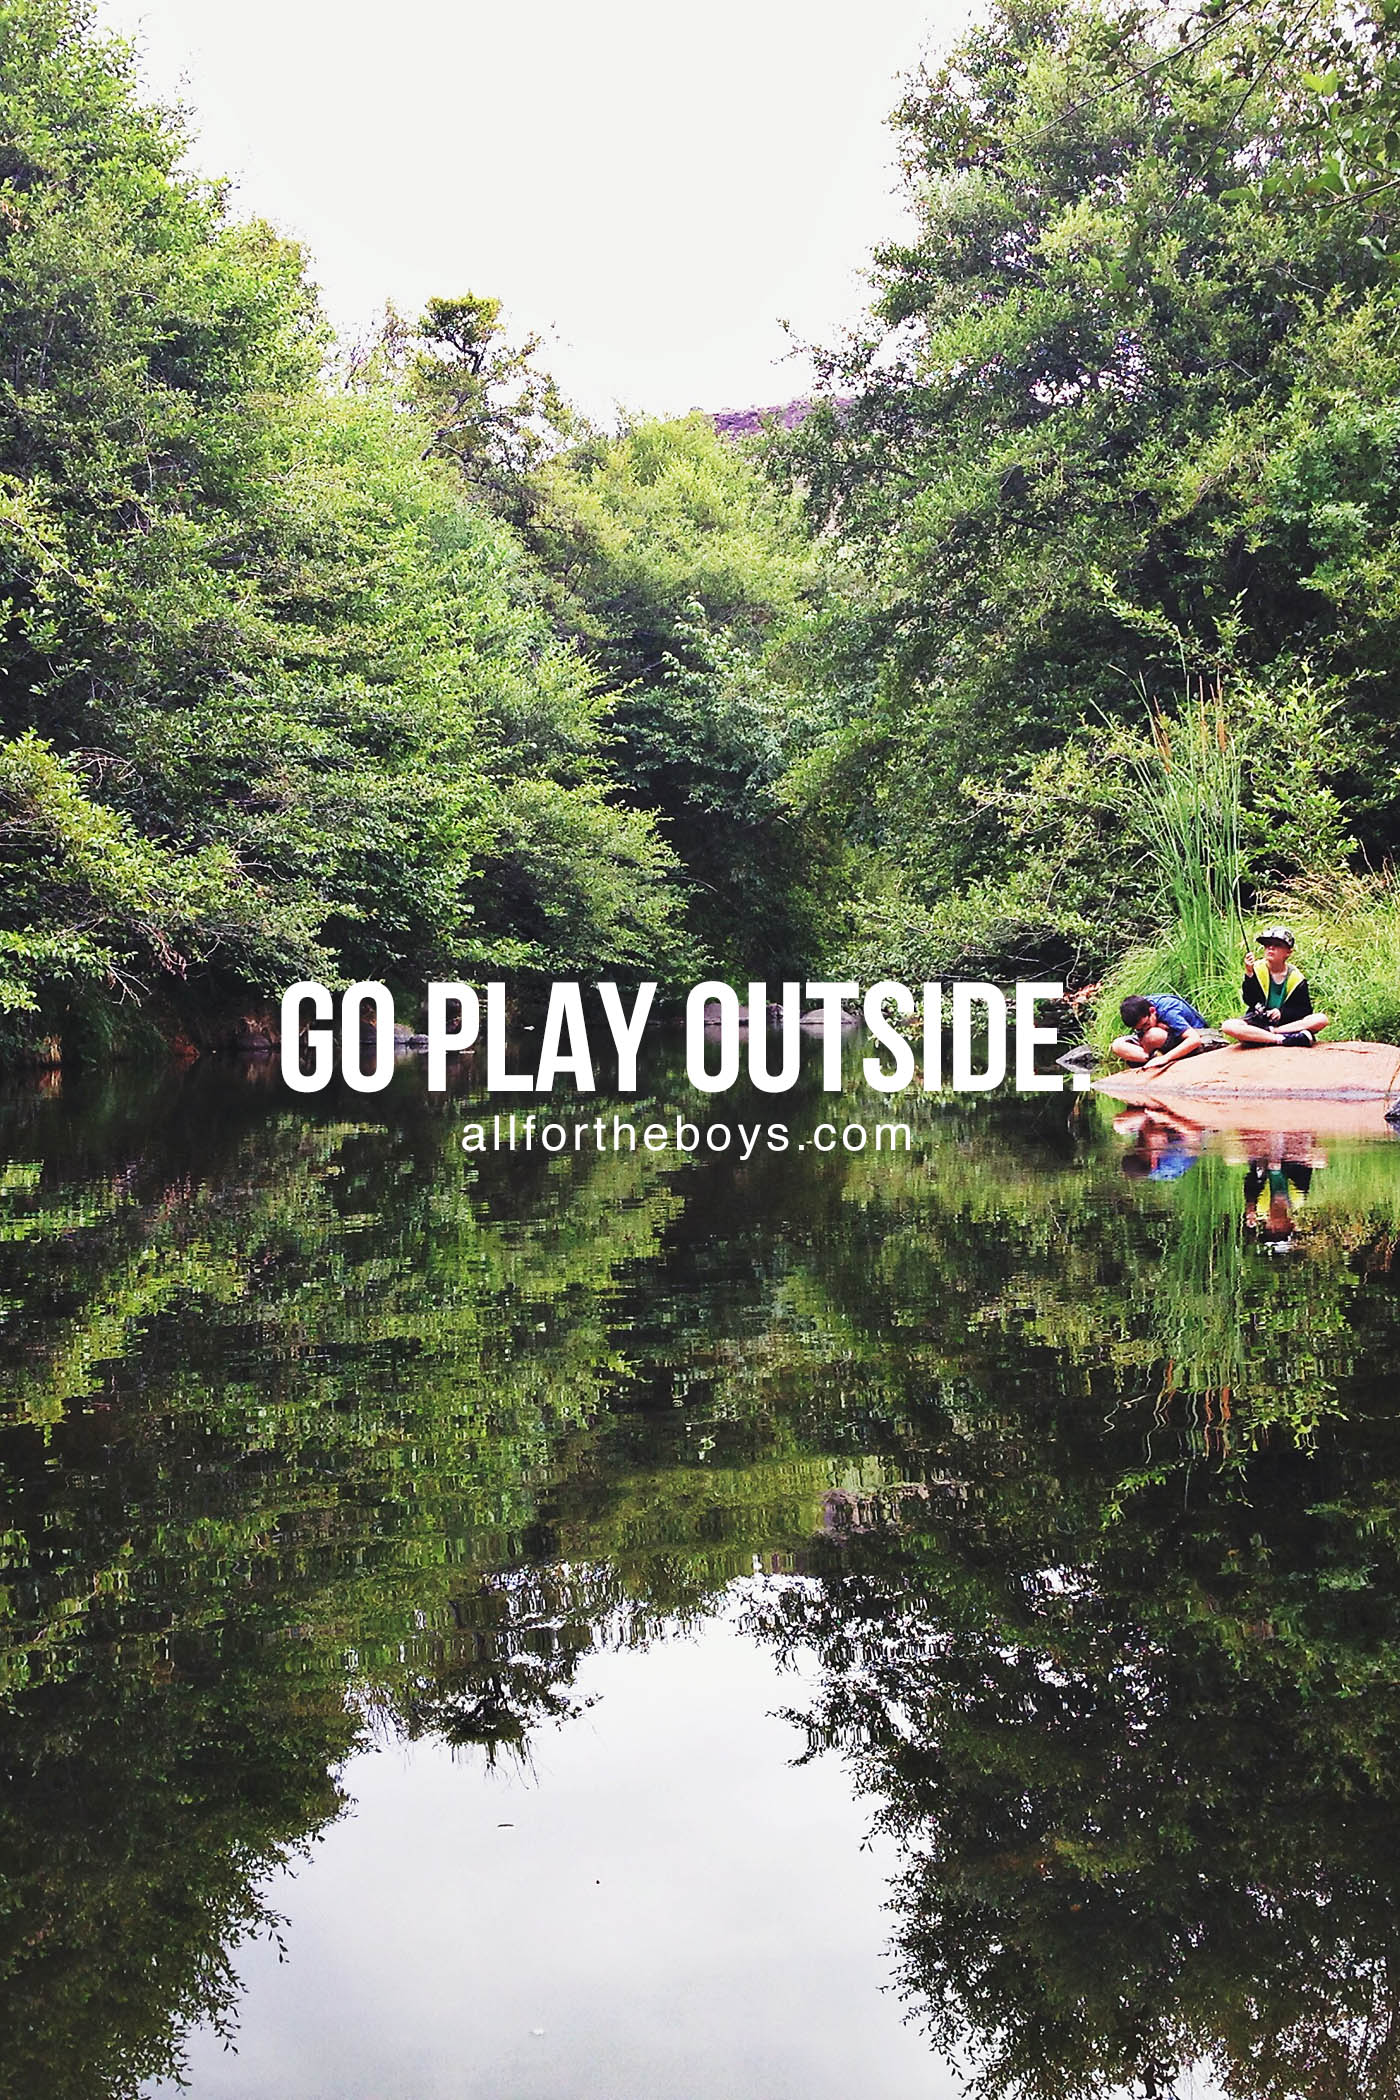 Go play outside.